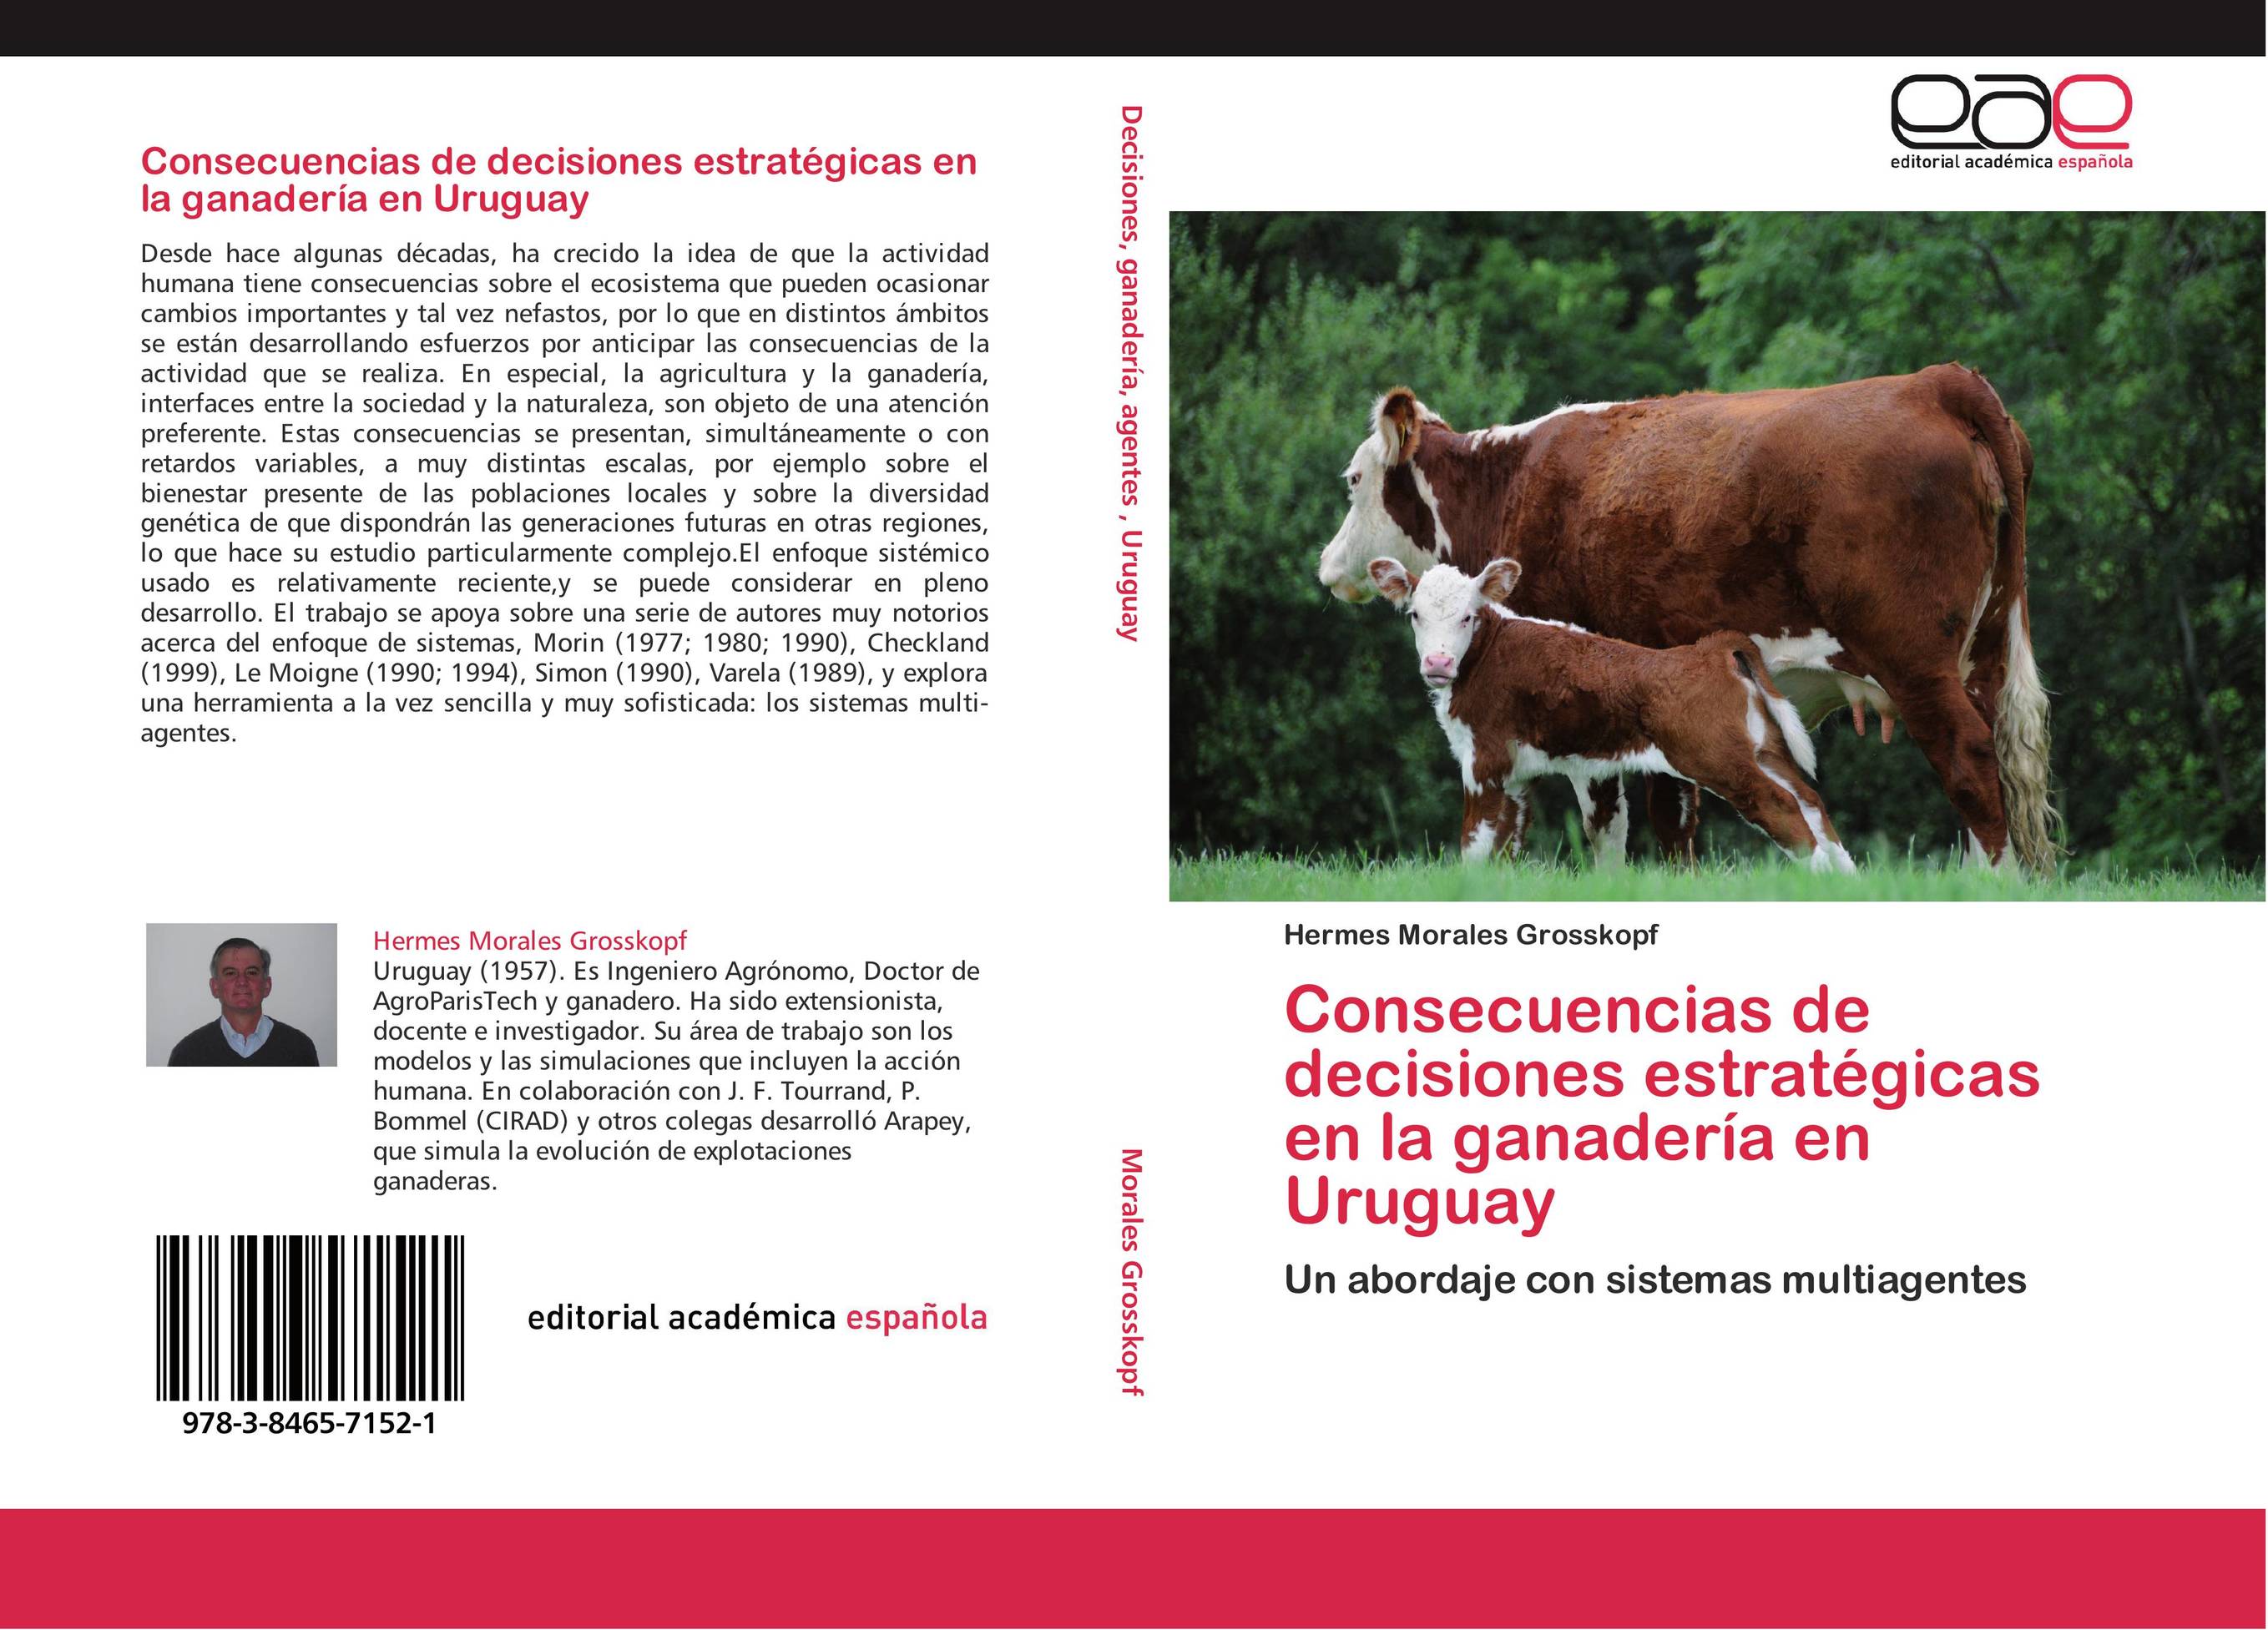 Consecuencias de decisiones estratégicas en la ganadería en Uruguay